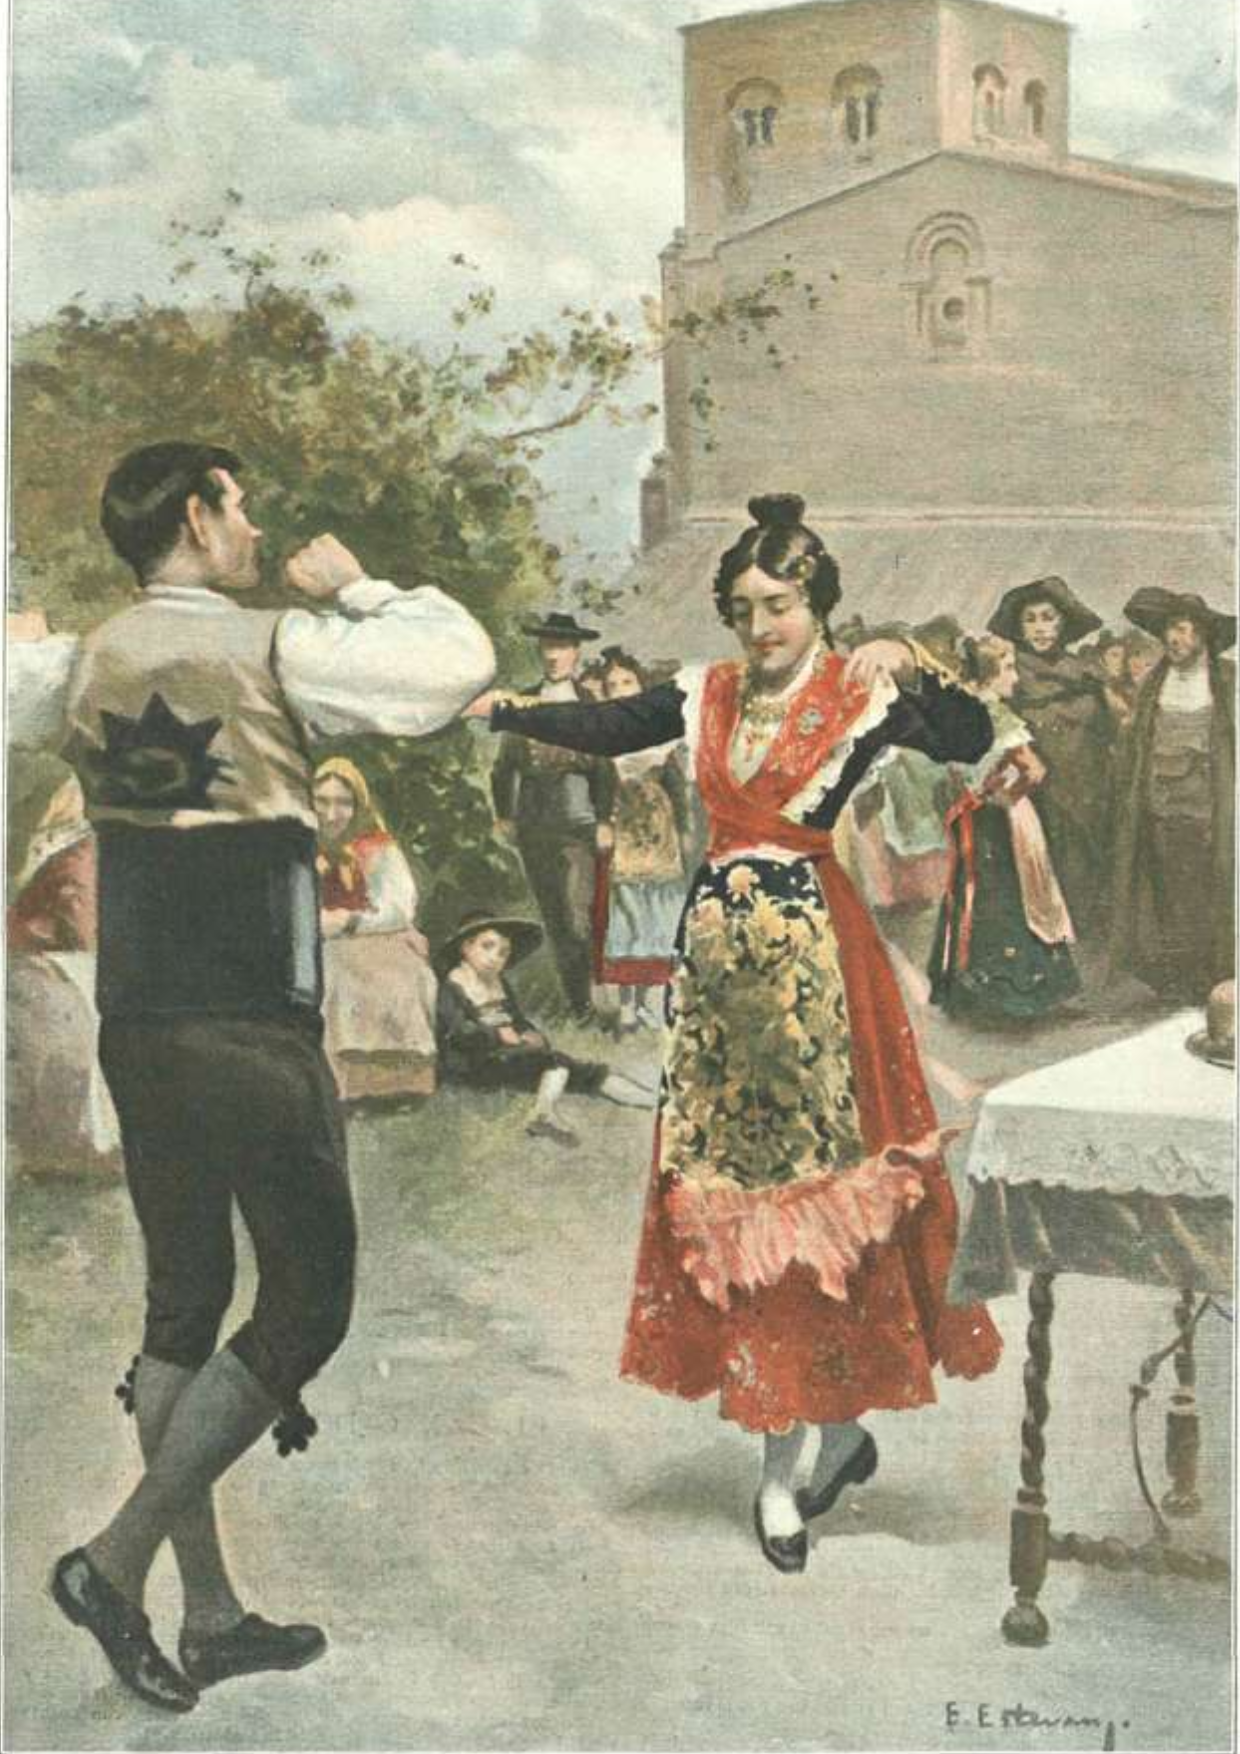 Baile Charro por Enrique Estevan